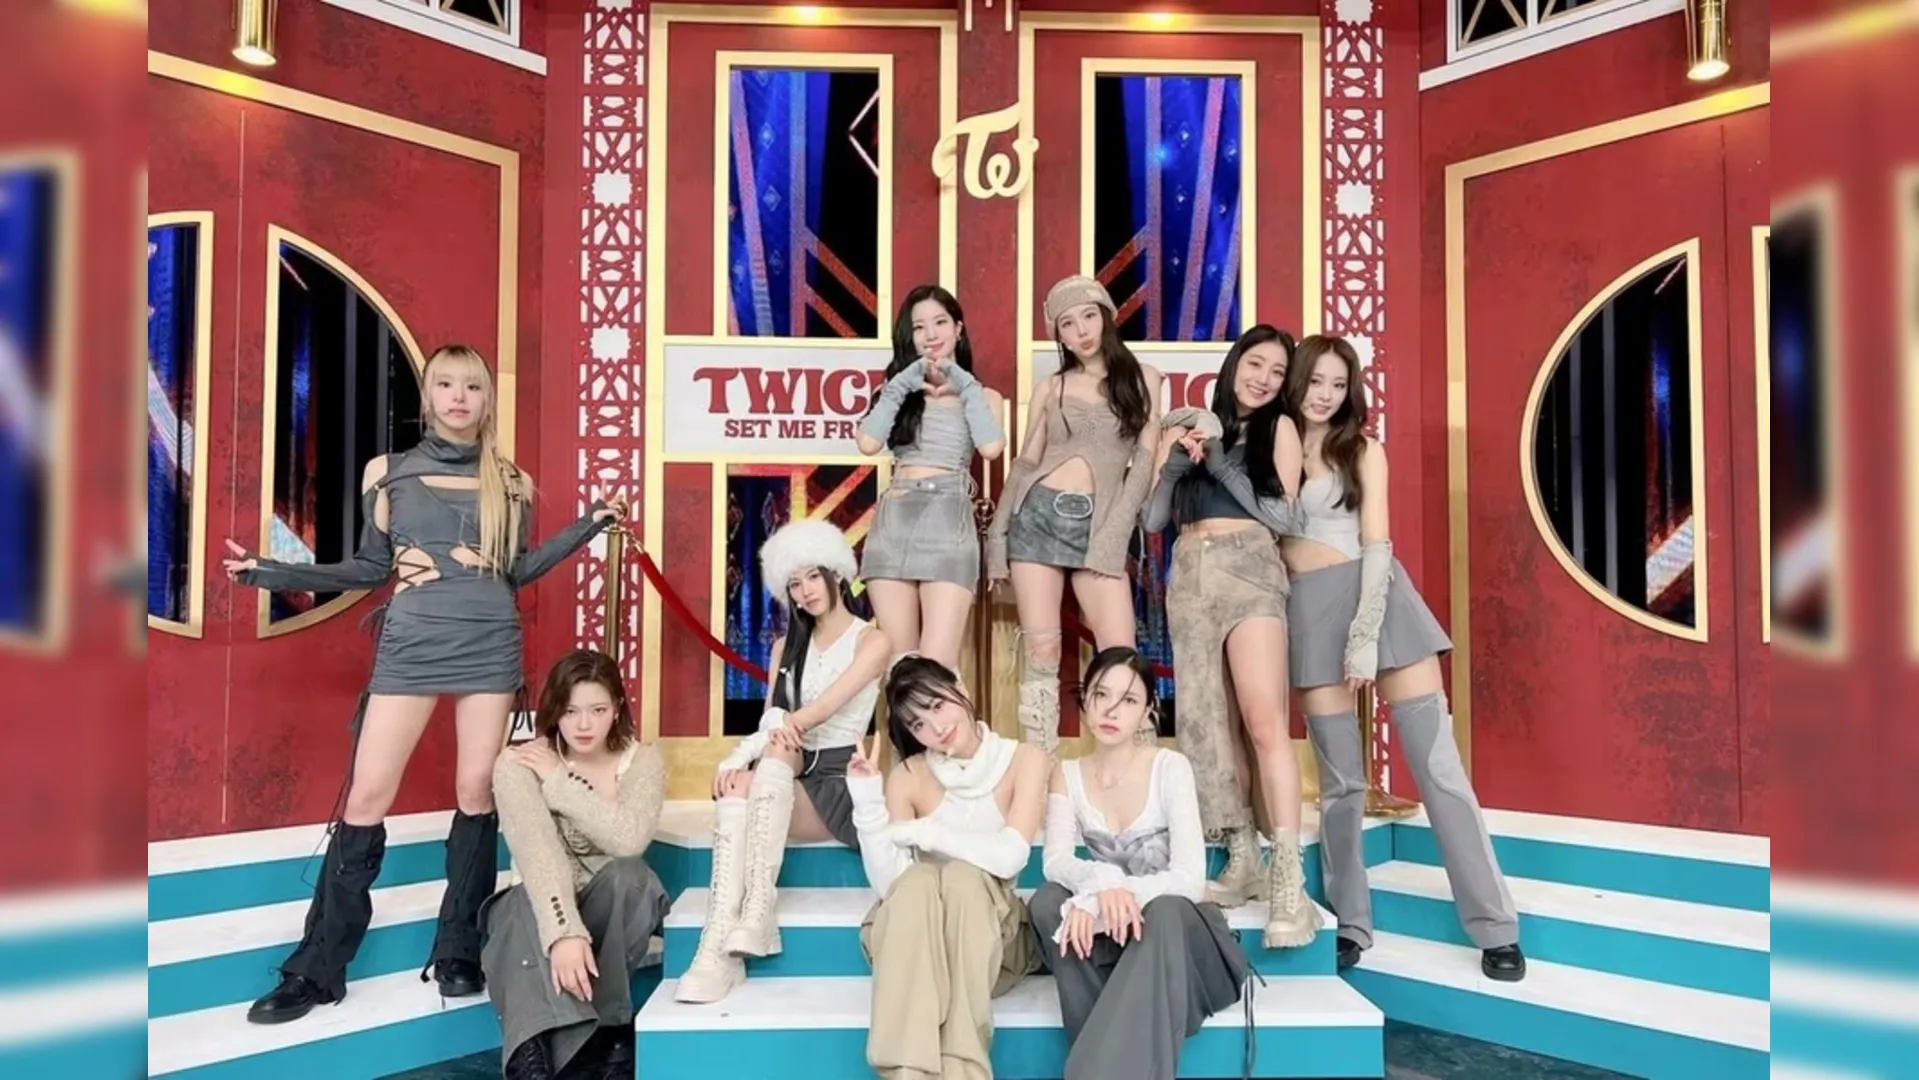 Twice anuncia show no Brasil em fevereiro de 2024, Música